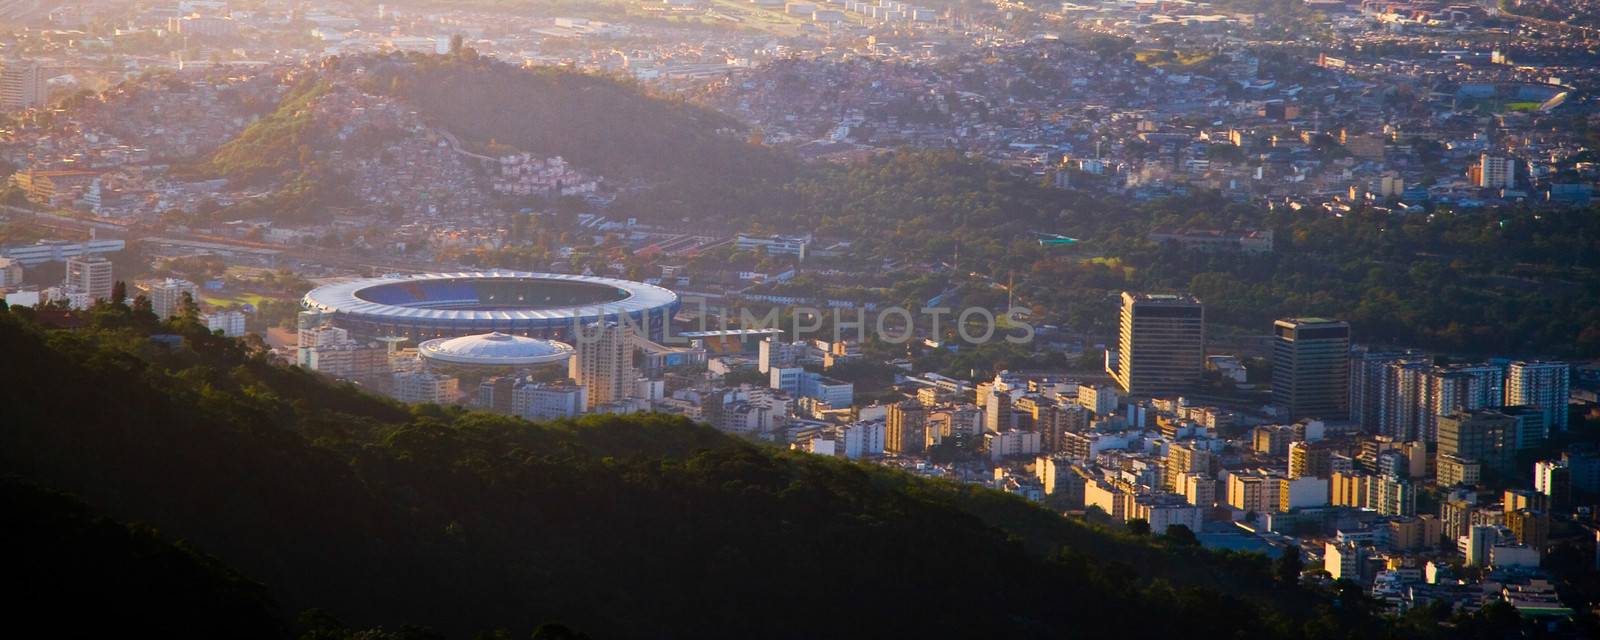 Maracana stadium in Rio de Janeiro by CelsoDiniz